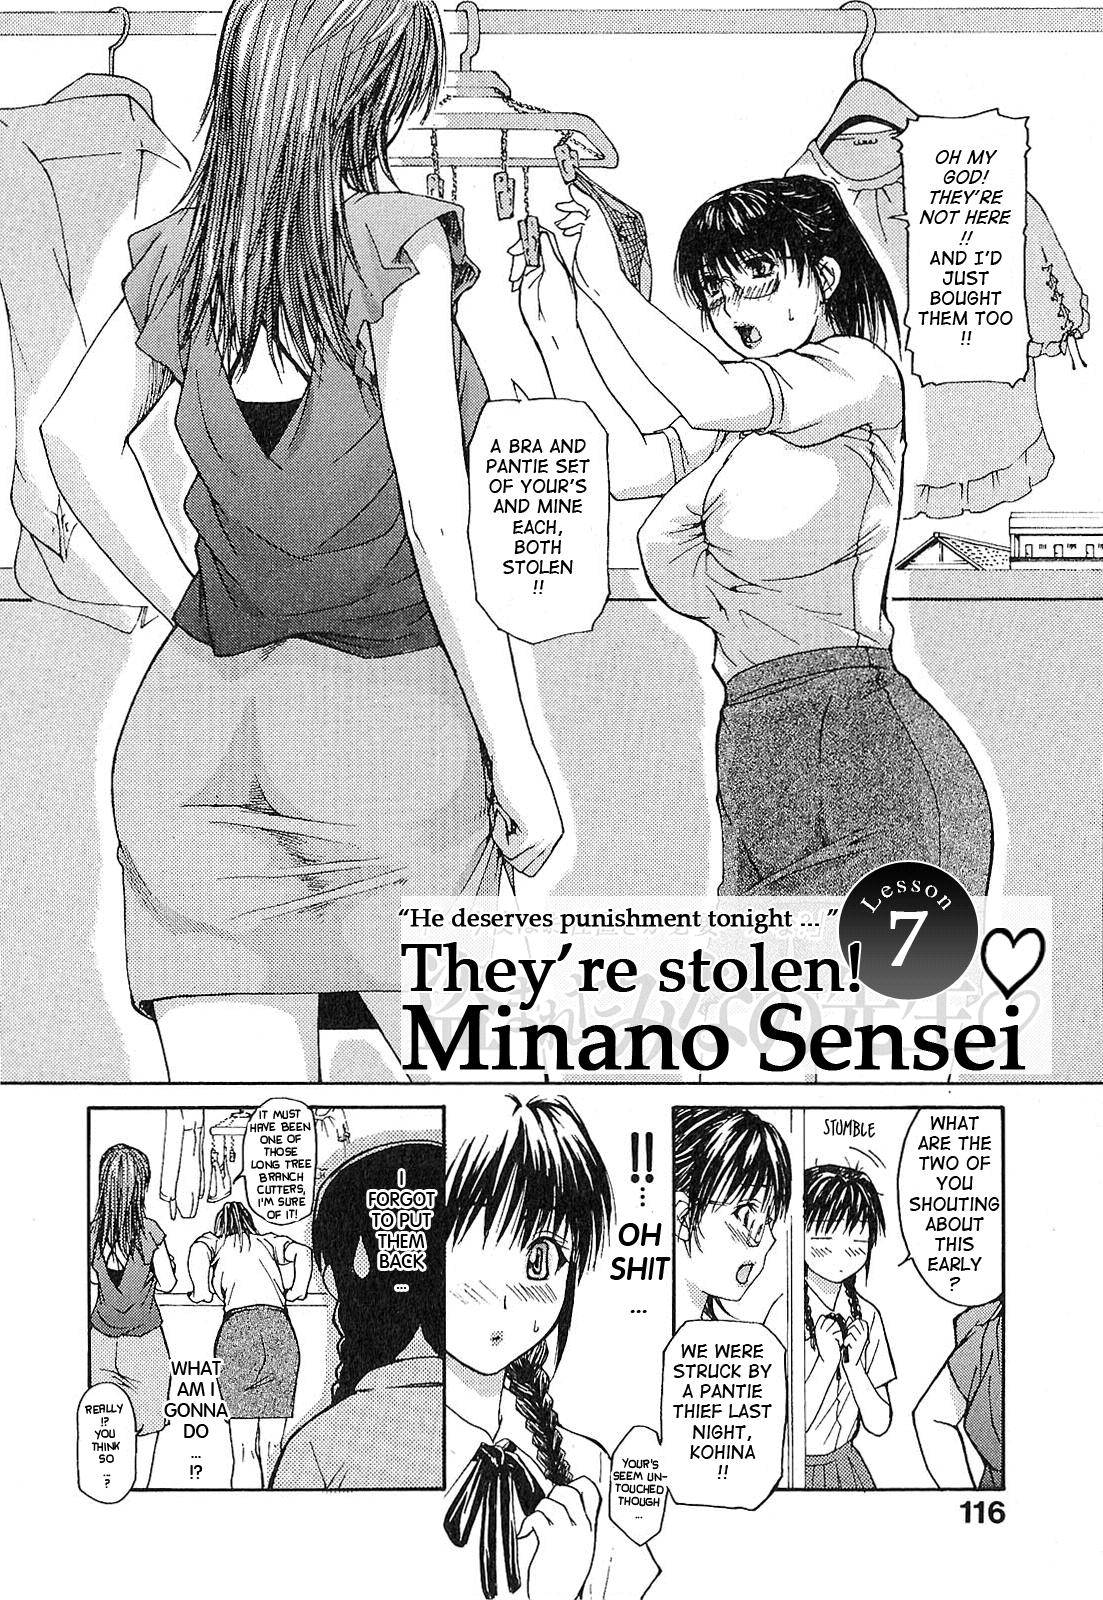 Tonari no Minano Sensei Vol. 1 126